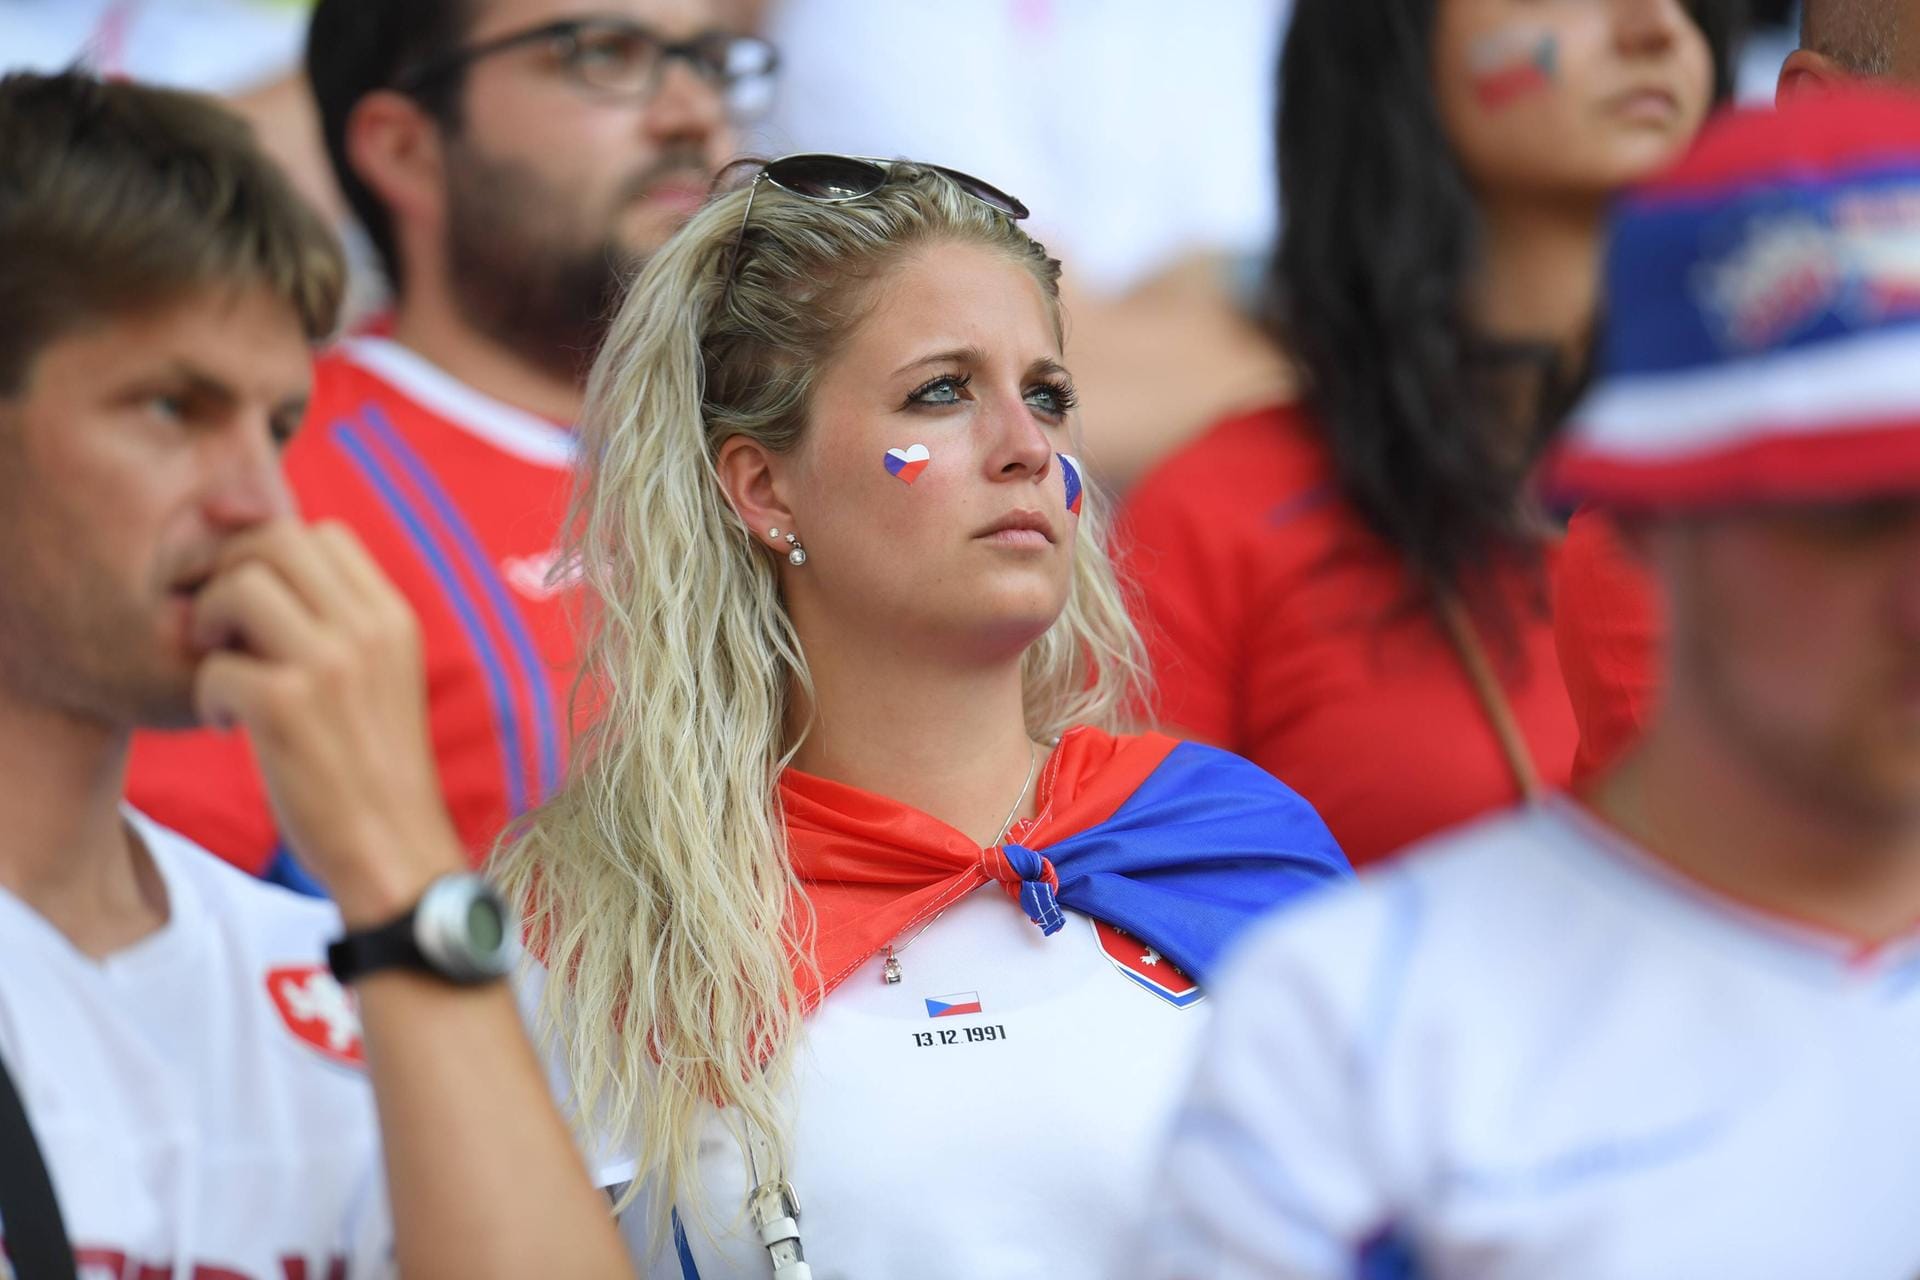 Blonde Schönheit: Auch der kroatische Gegner hatte einiges zu bieten - nicht nur auf dem Platz, wie diese Tschechin beweist.